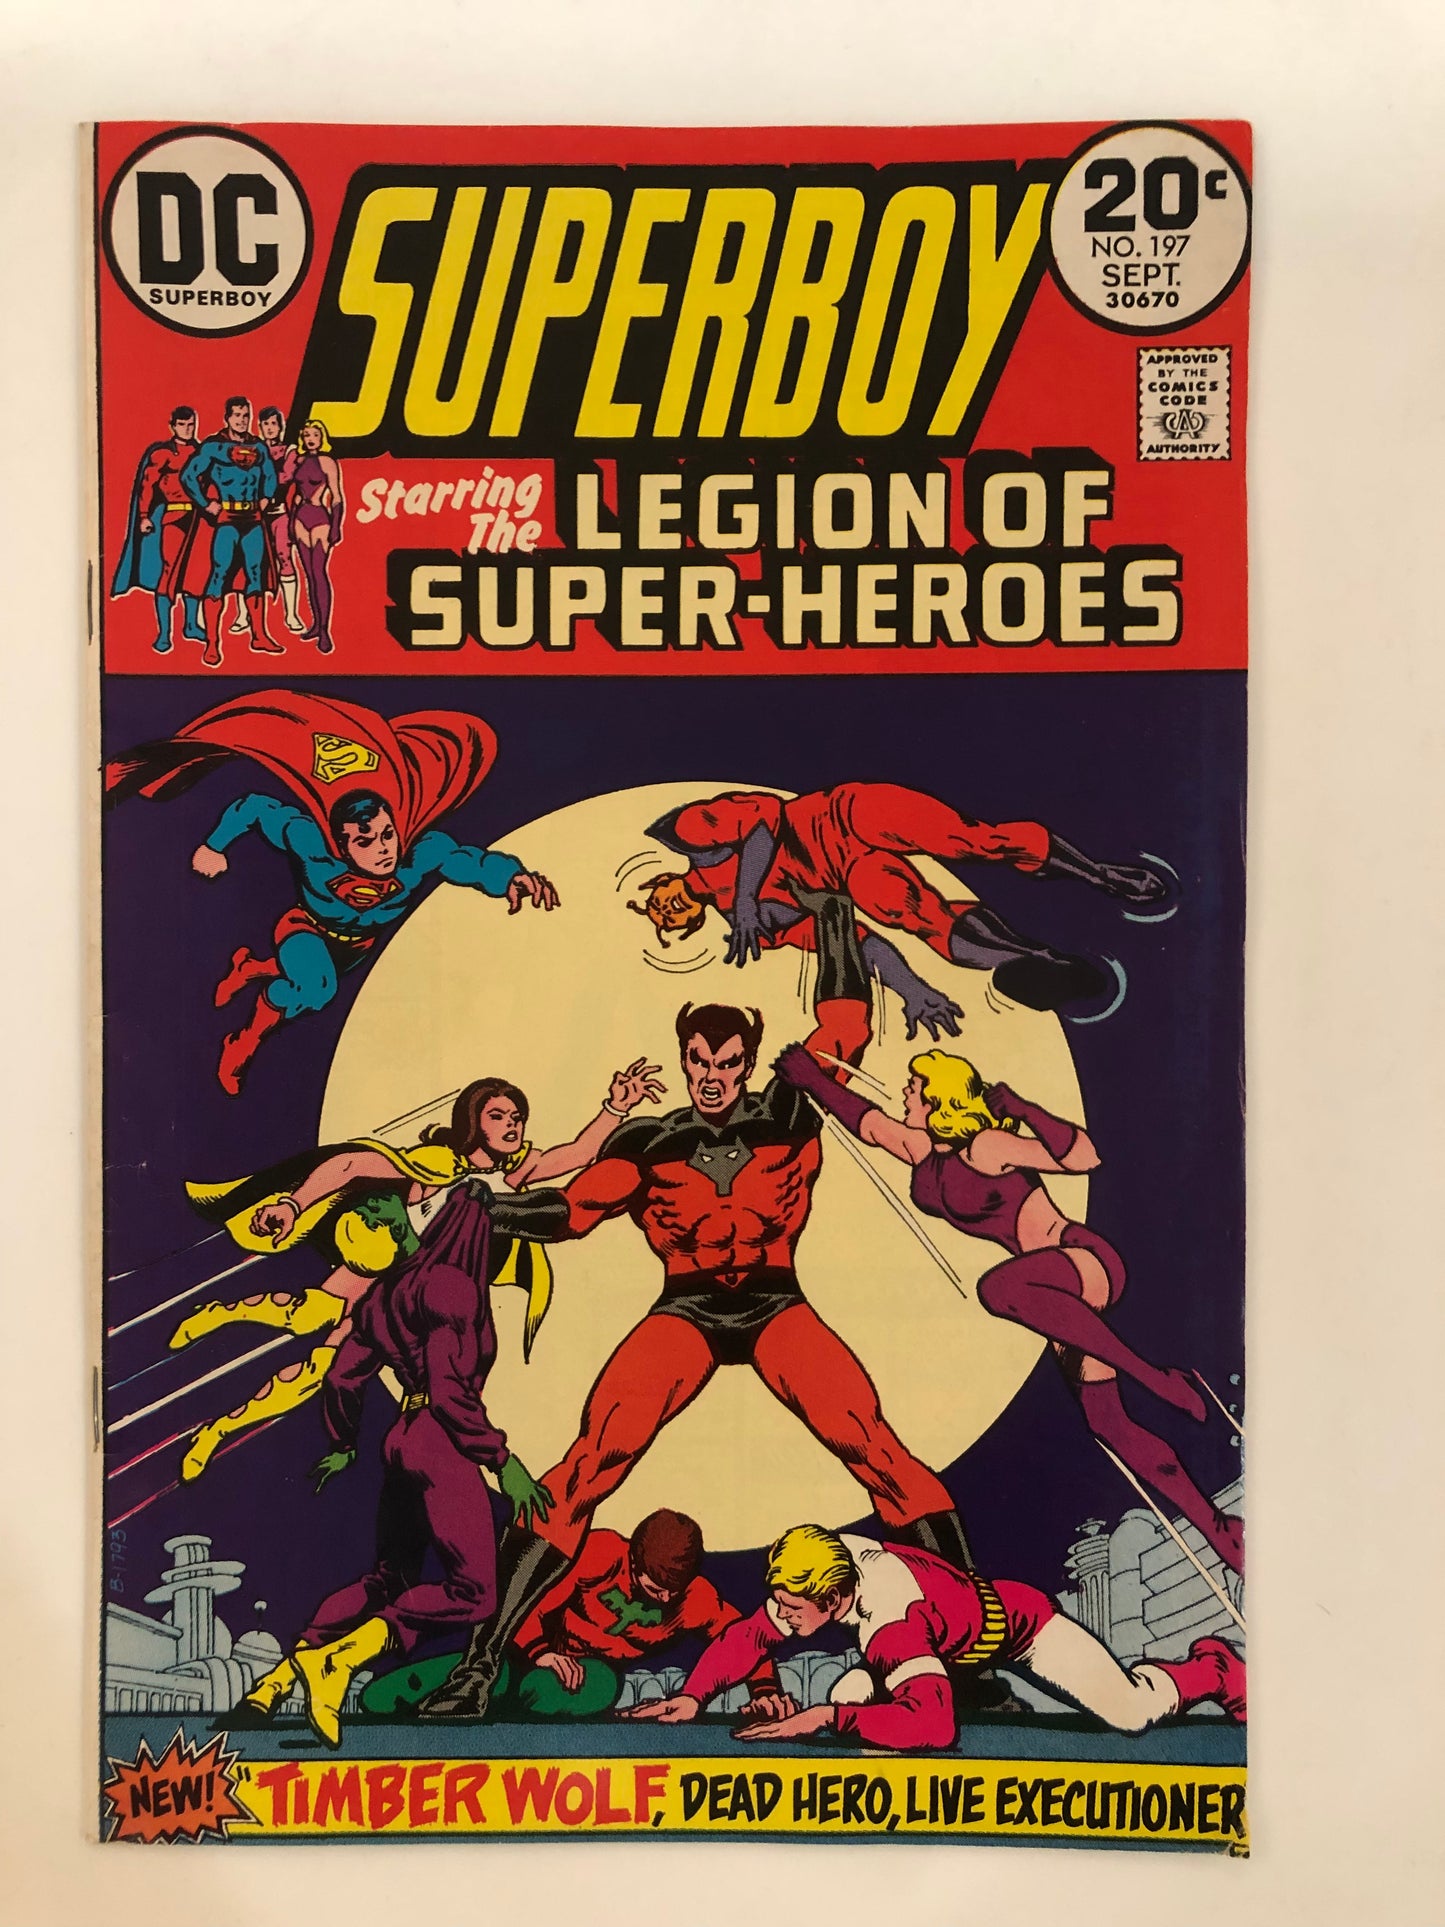 Superboy #197